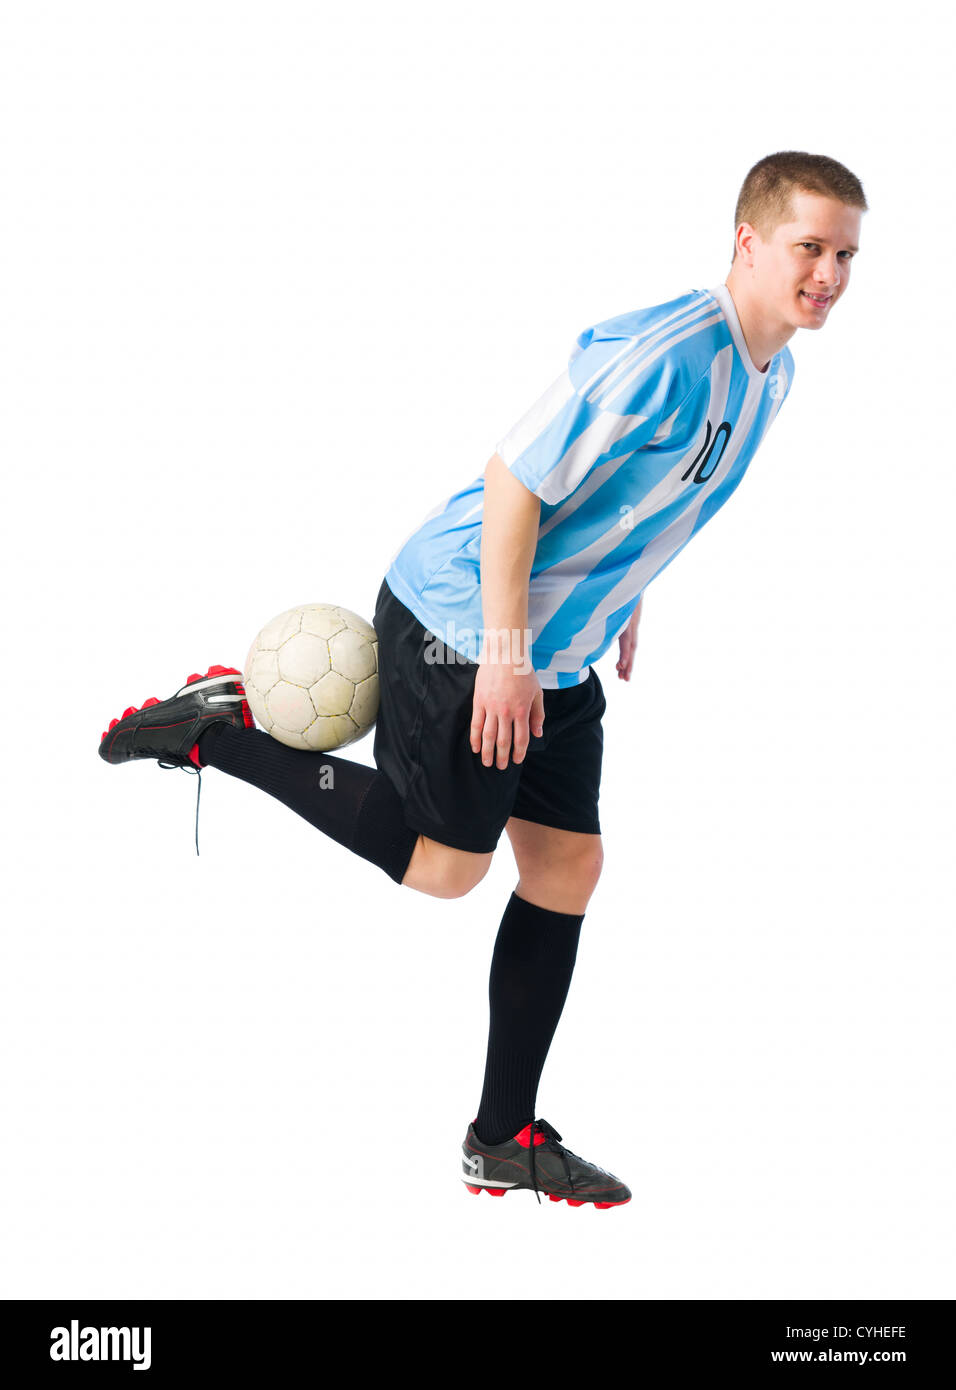 Fußball-Spieler kontrollieren einen Ball, weißen Hintergrund. Stockfoto